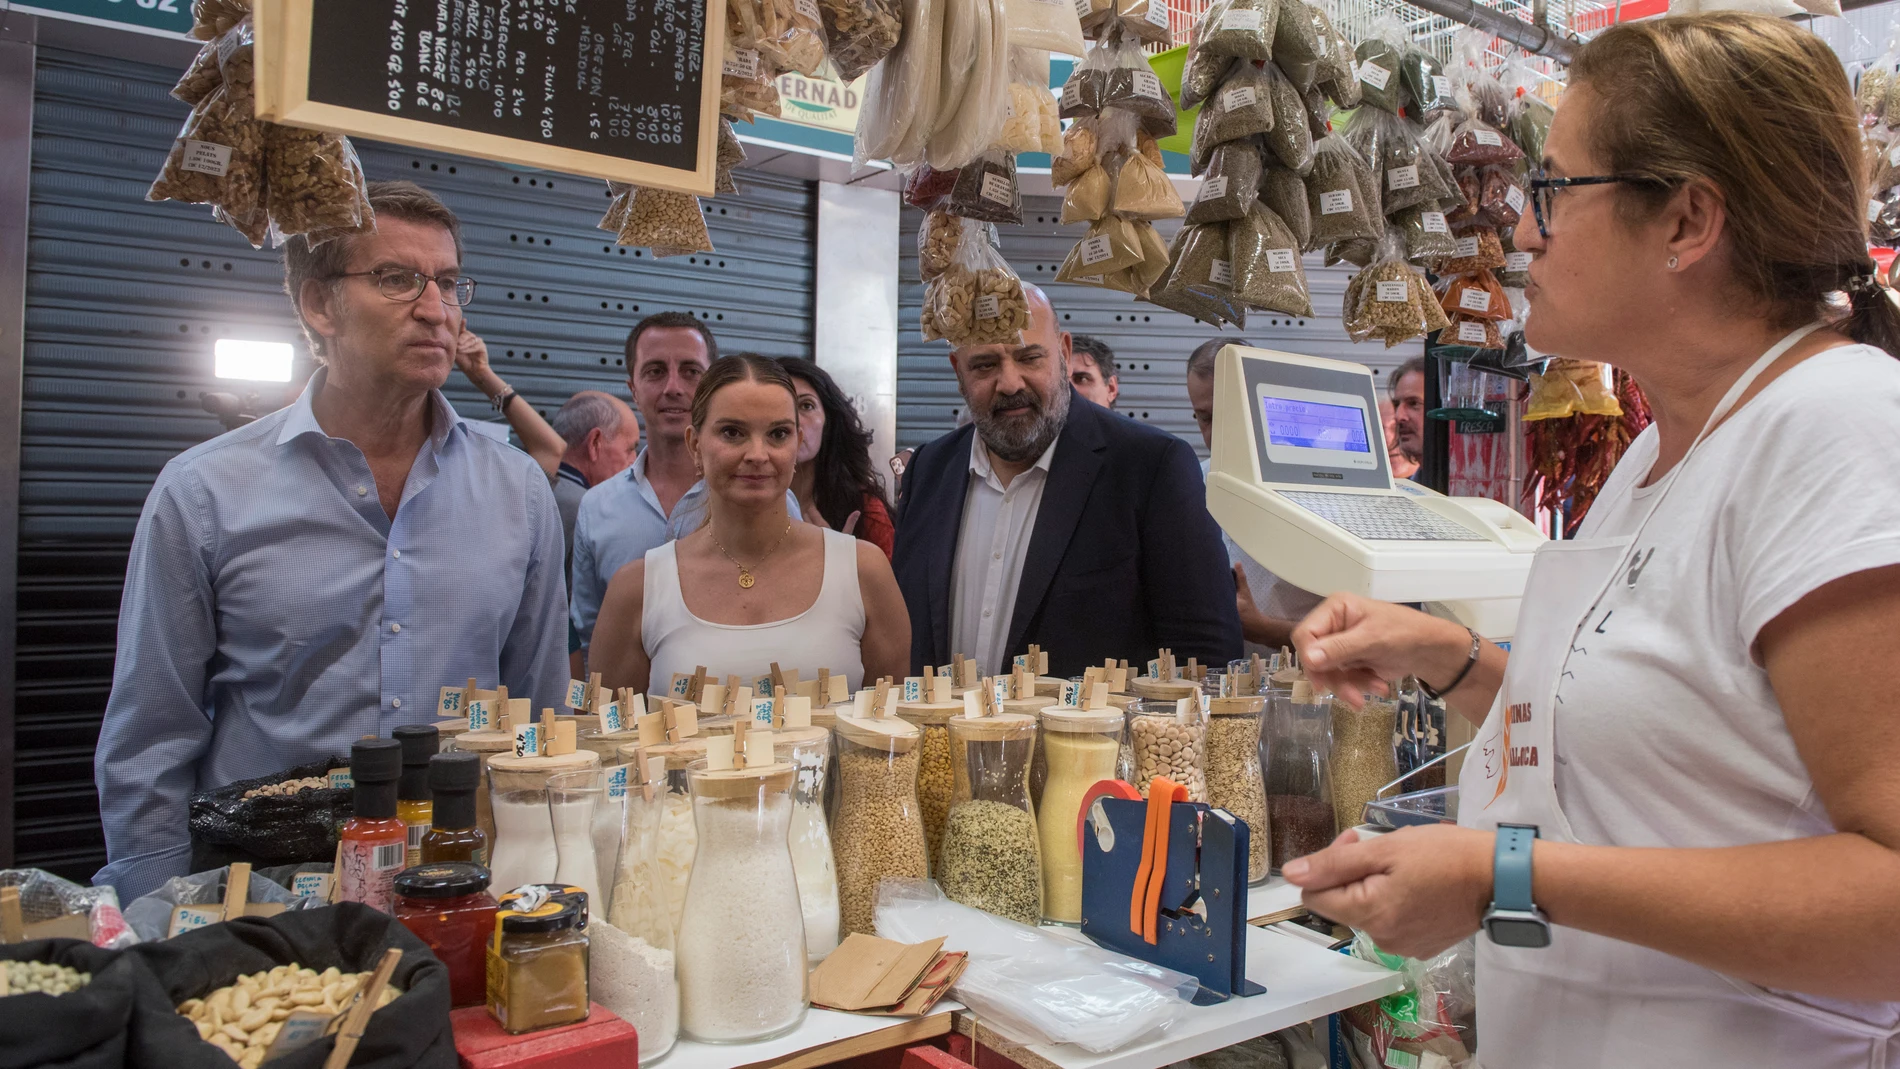 El presidente del Partido Popular, Alberto Núñez Feijóo, durante su visita al Mercado Pere Garau en Palma de Mallorca junto a la presidenta del partido en Baleares, Marga Prohens, este martes. EFE/ Atienza